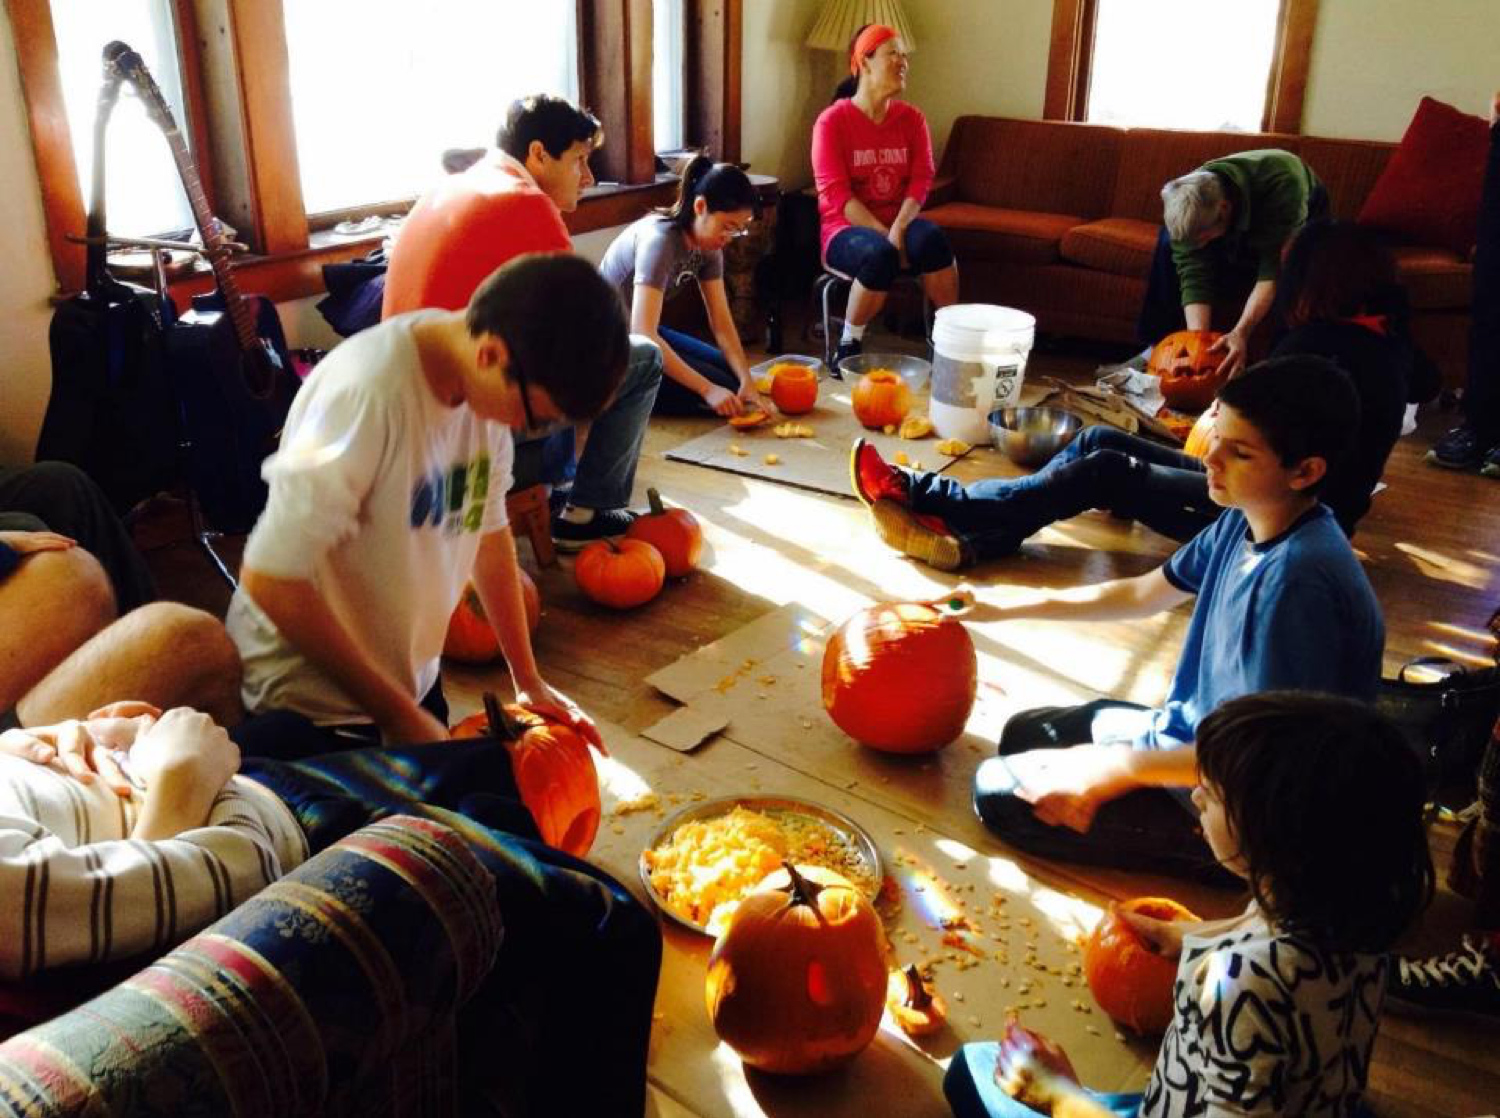 carving pumpkins.png